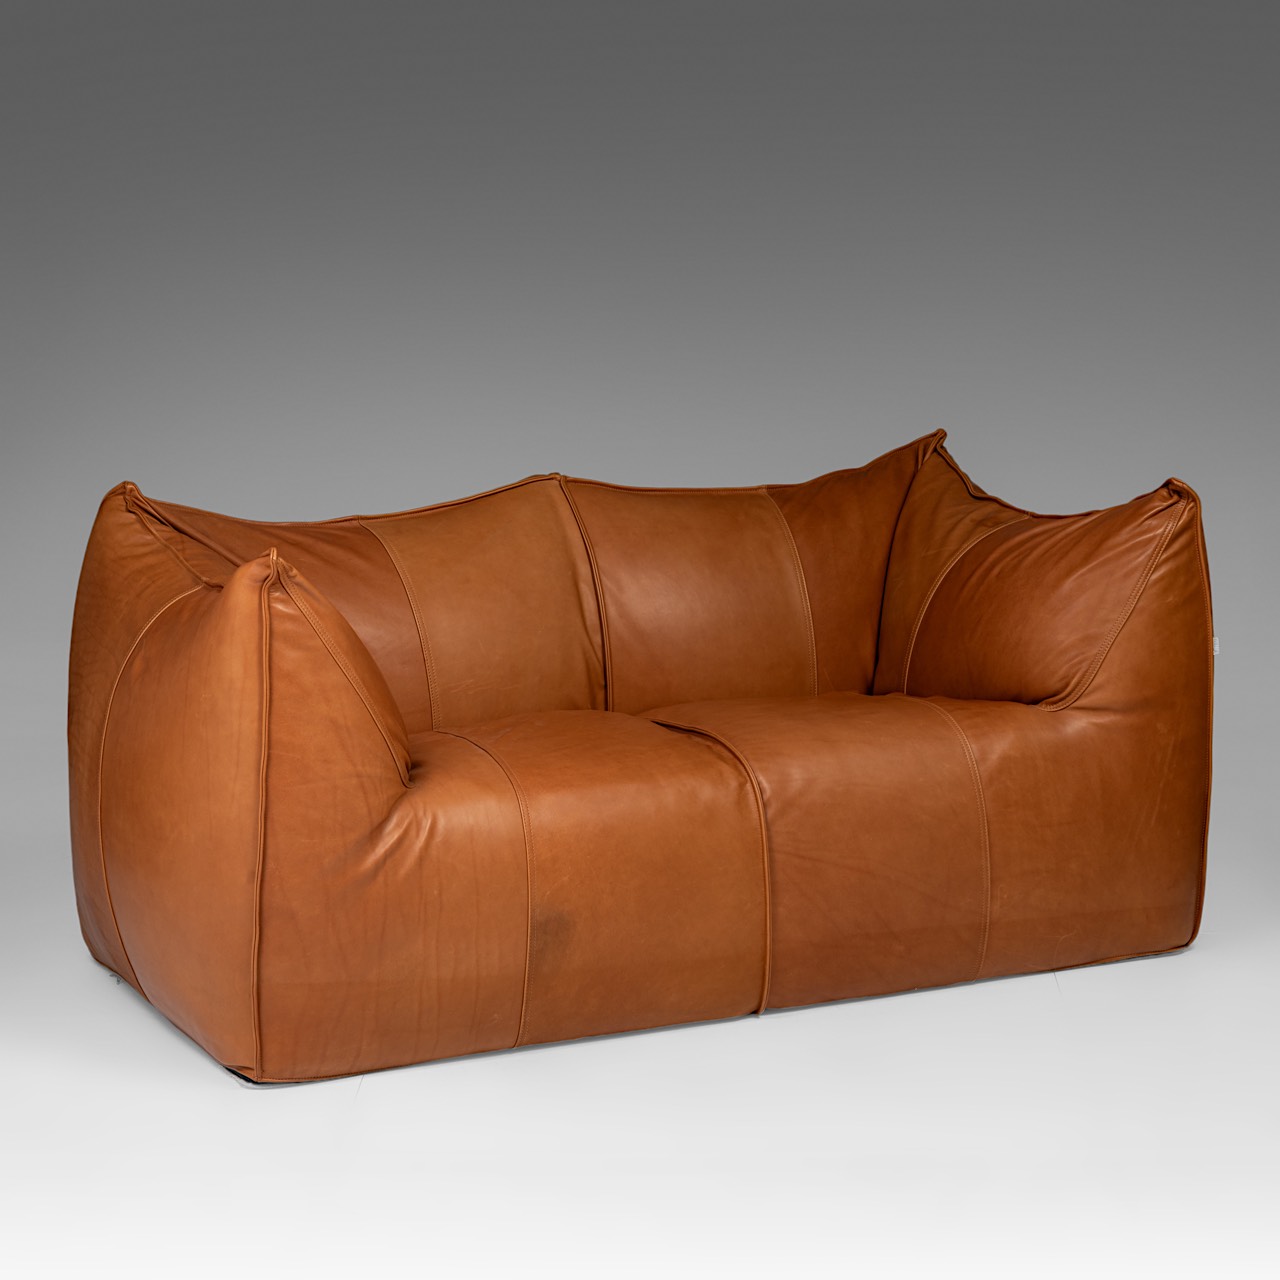 A Mario Bellini 'Le Bambole' sofa for B&B Italia, H 74 - W 165 - D 80 cm - Image 2 of 9